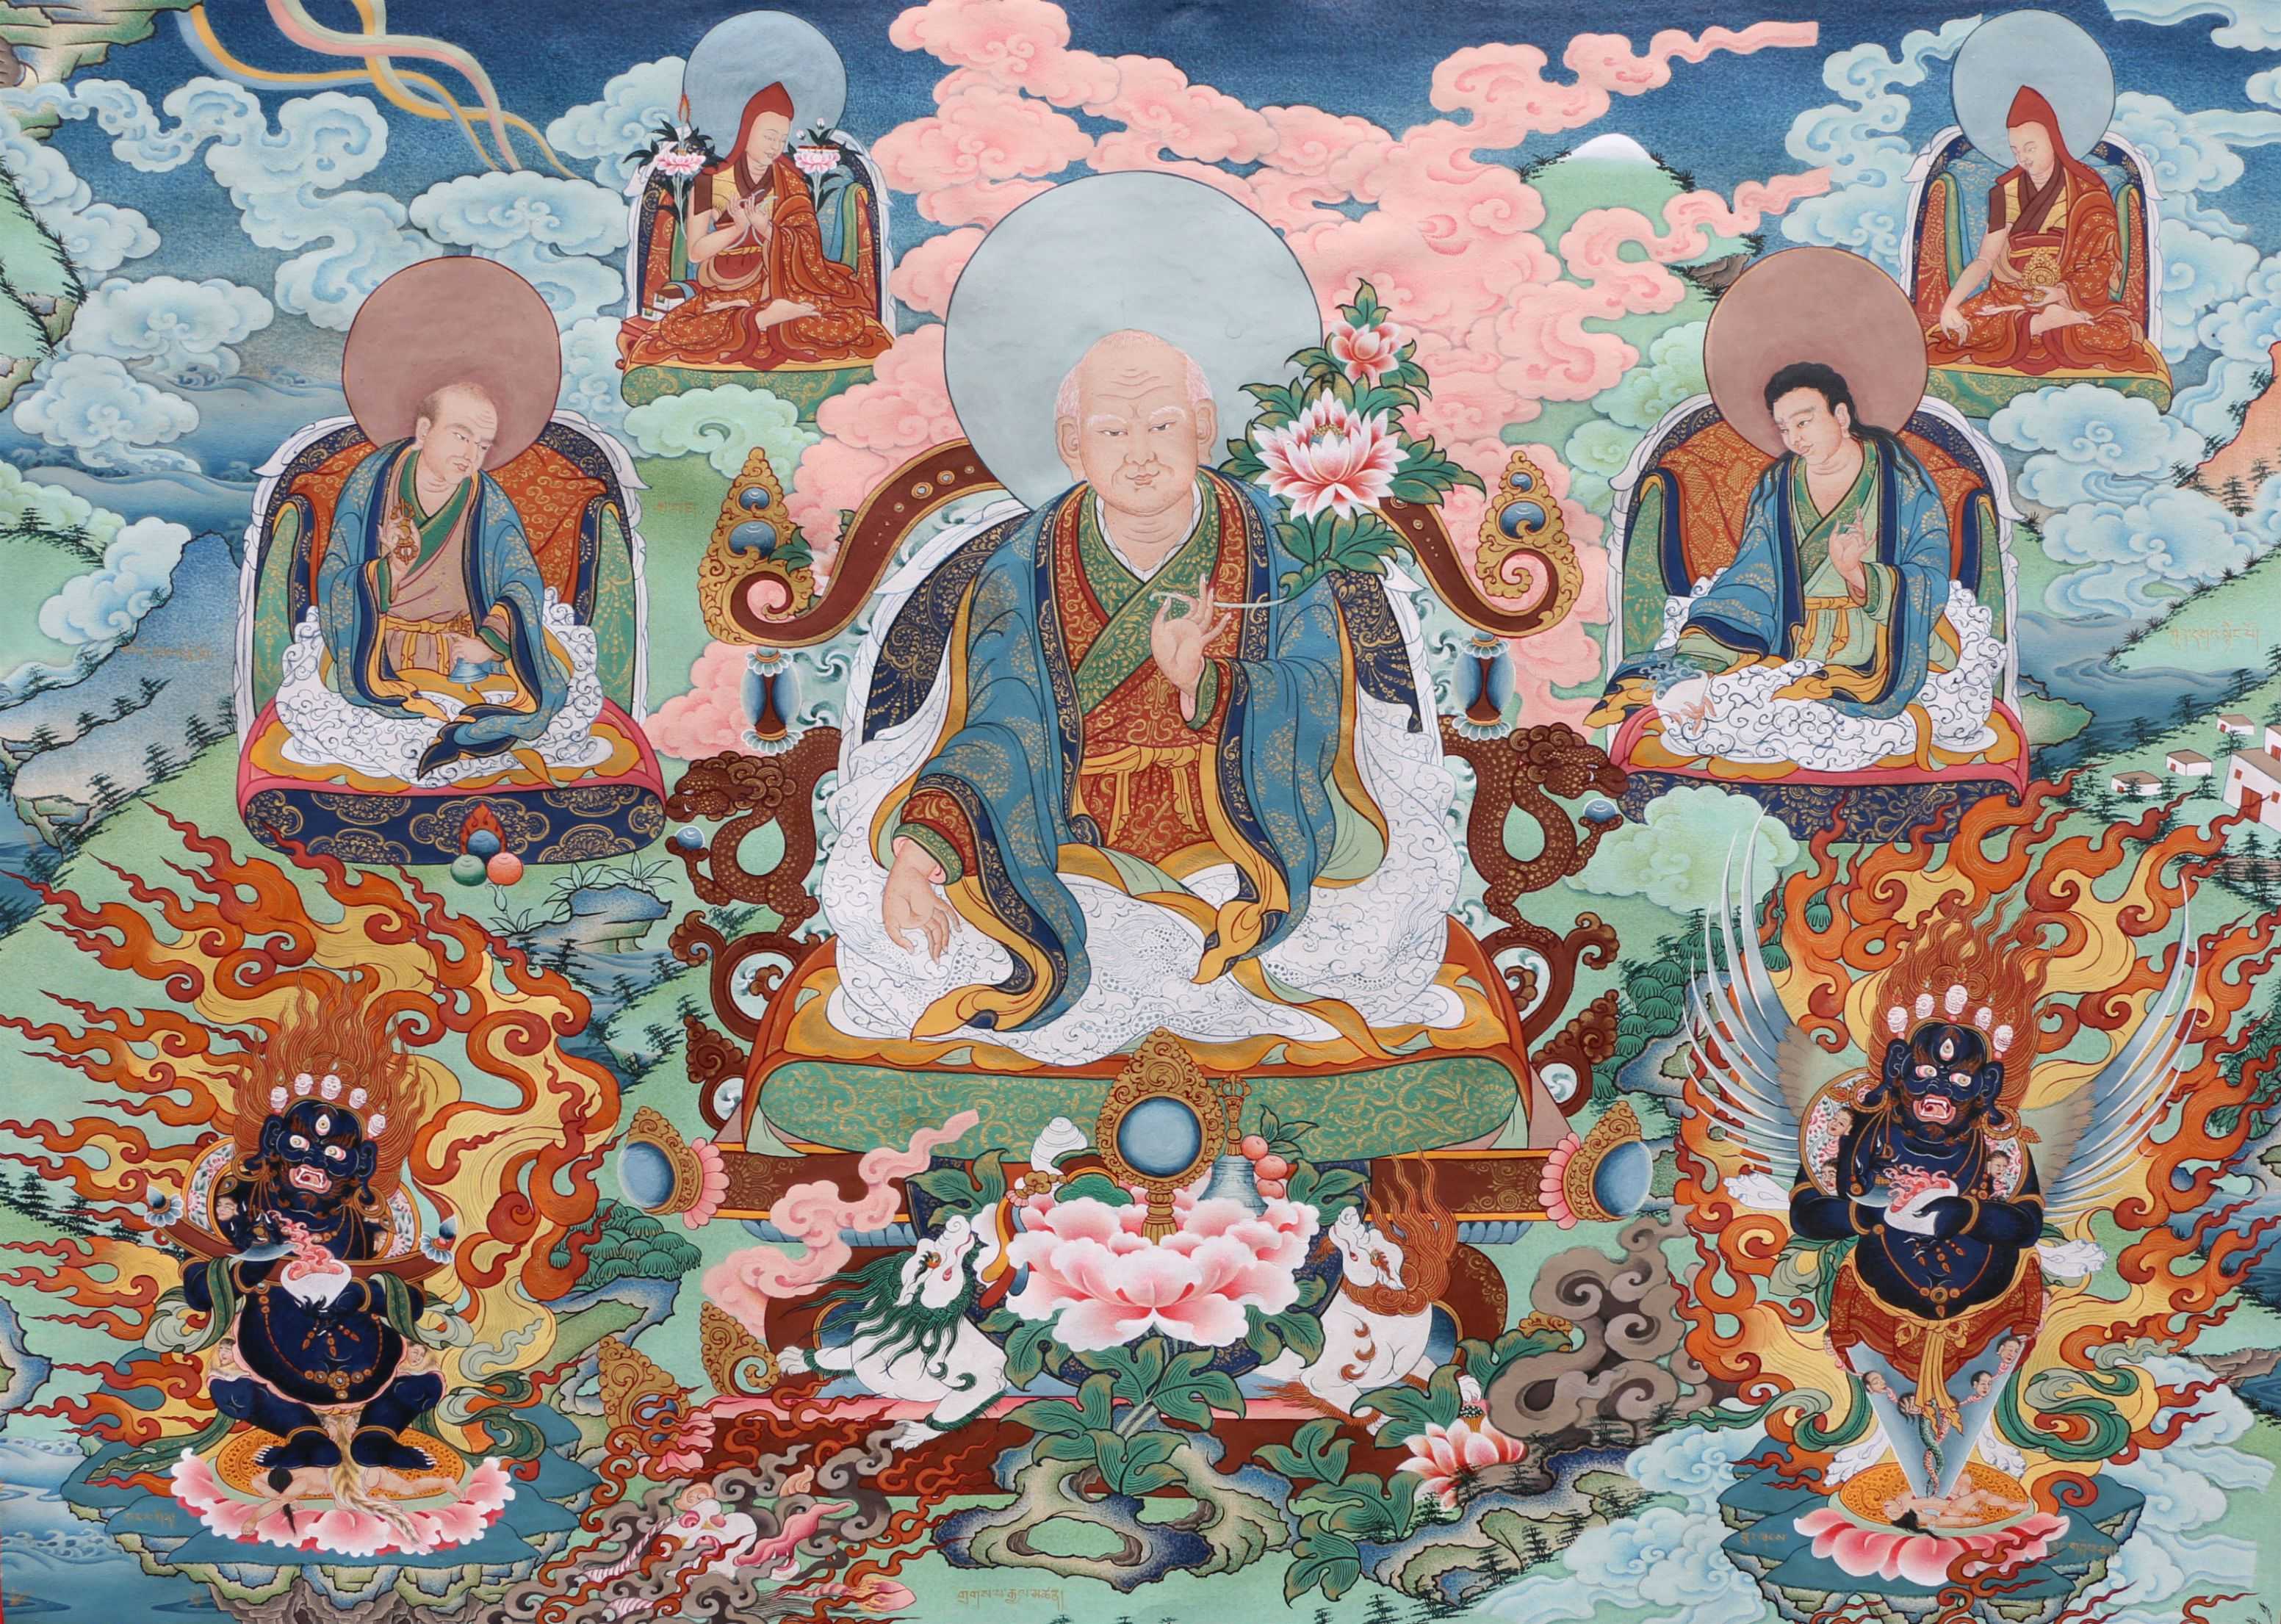 Буддизм. главные идеи учения, суть, принципы и философия